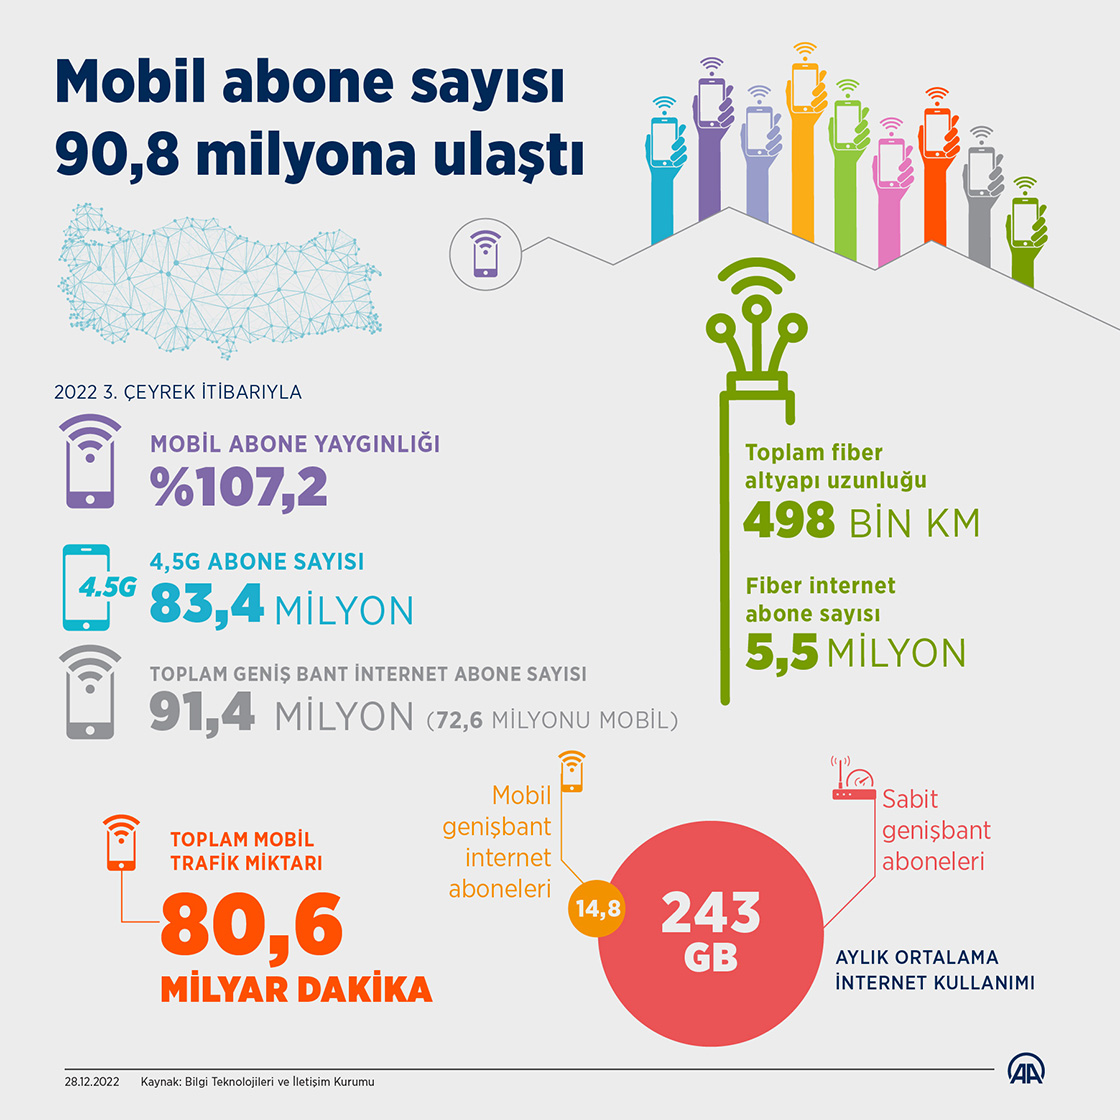 Türkiye'de mobil abone sayısı 90,8 milyona ulaştı